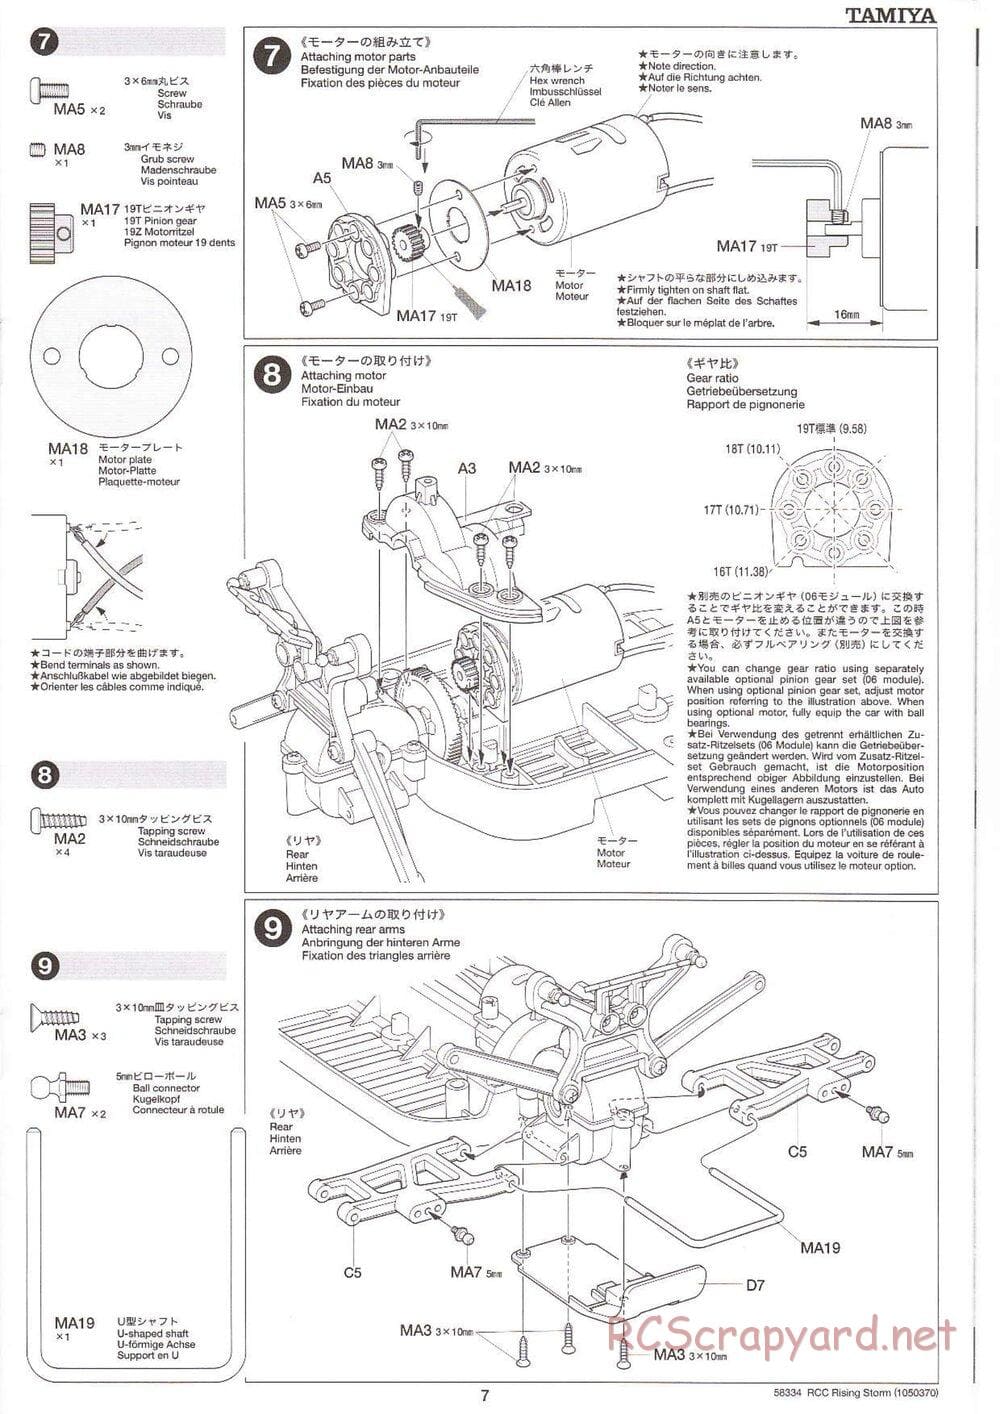 Tamiya - Rising Storm Chassis - Manual - Page 7